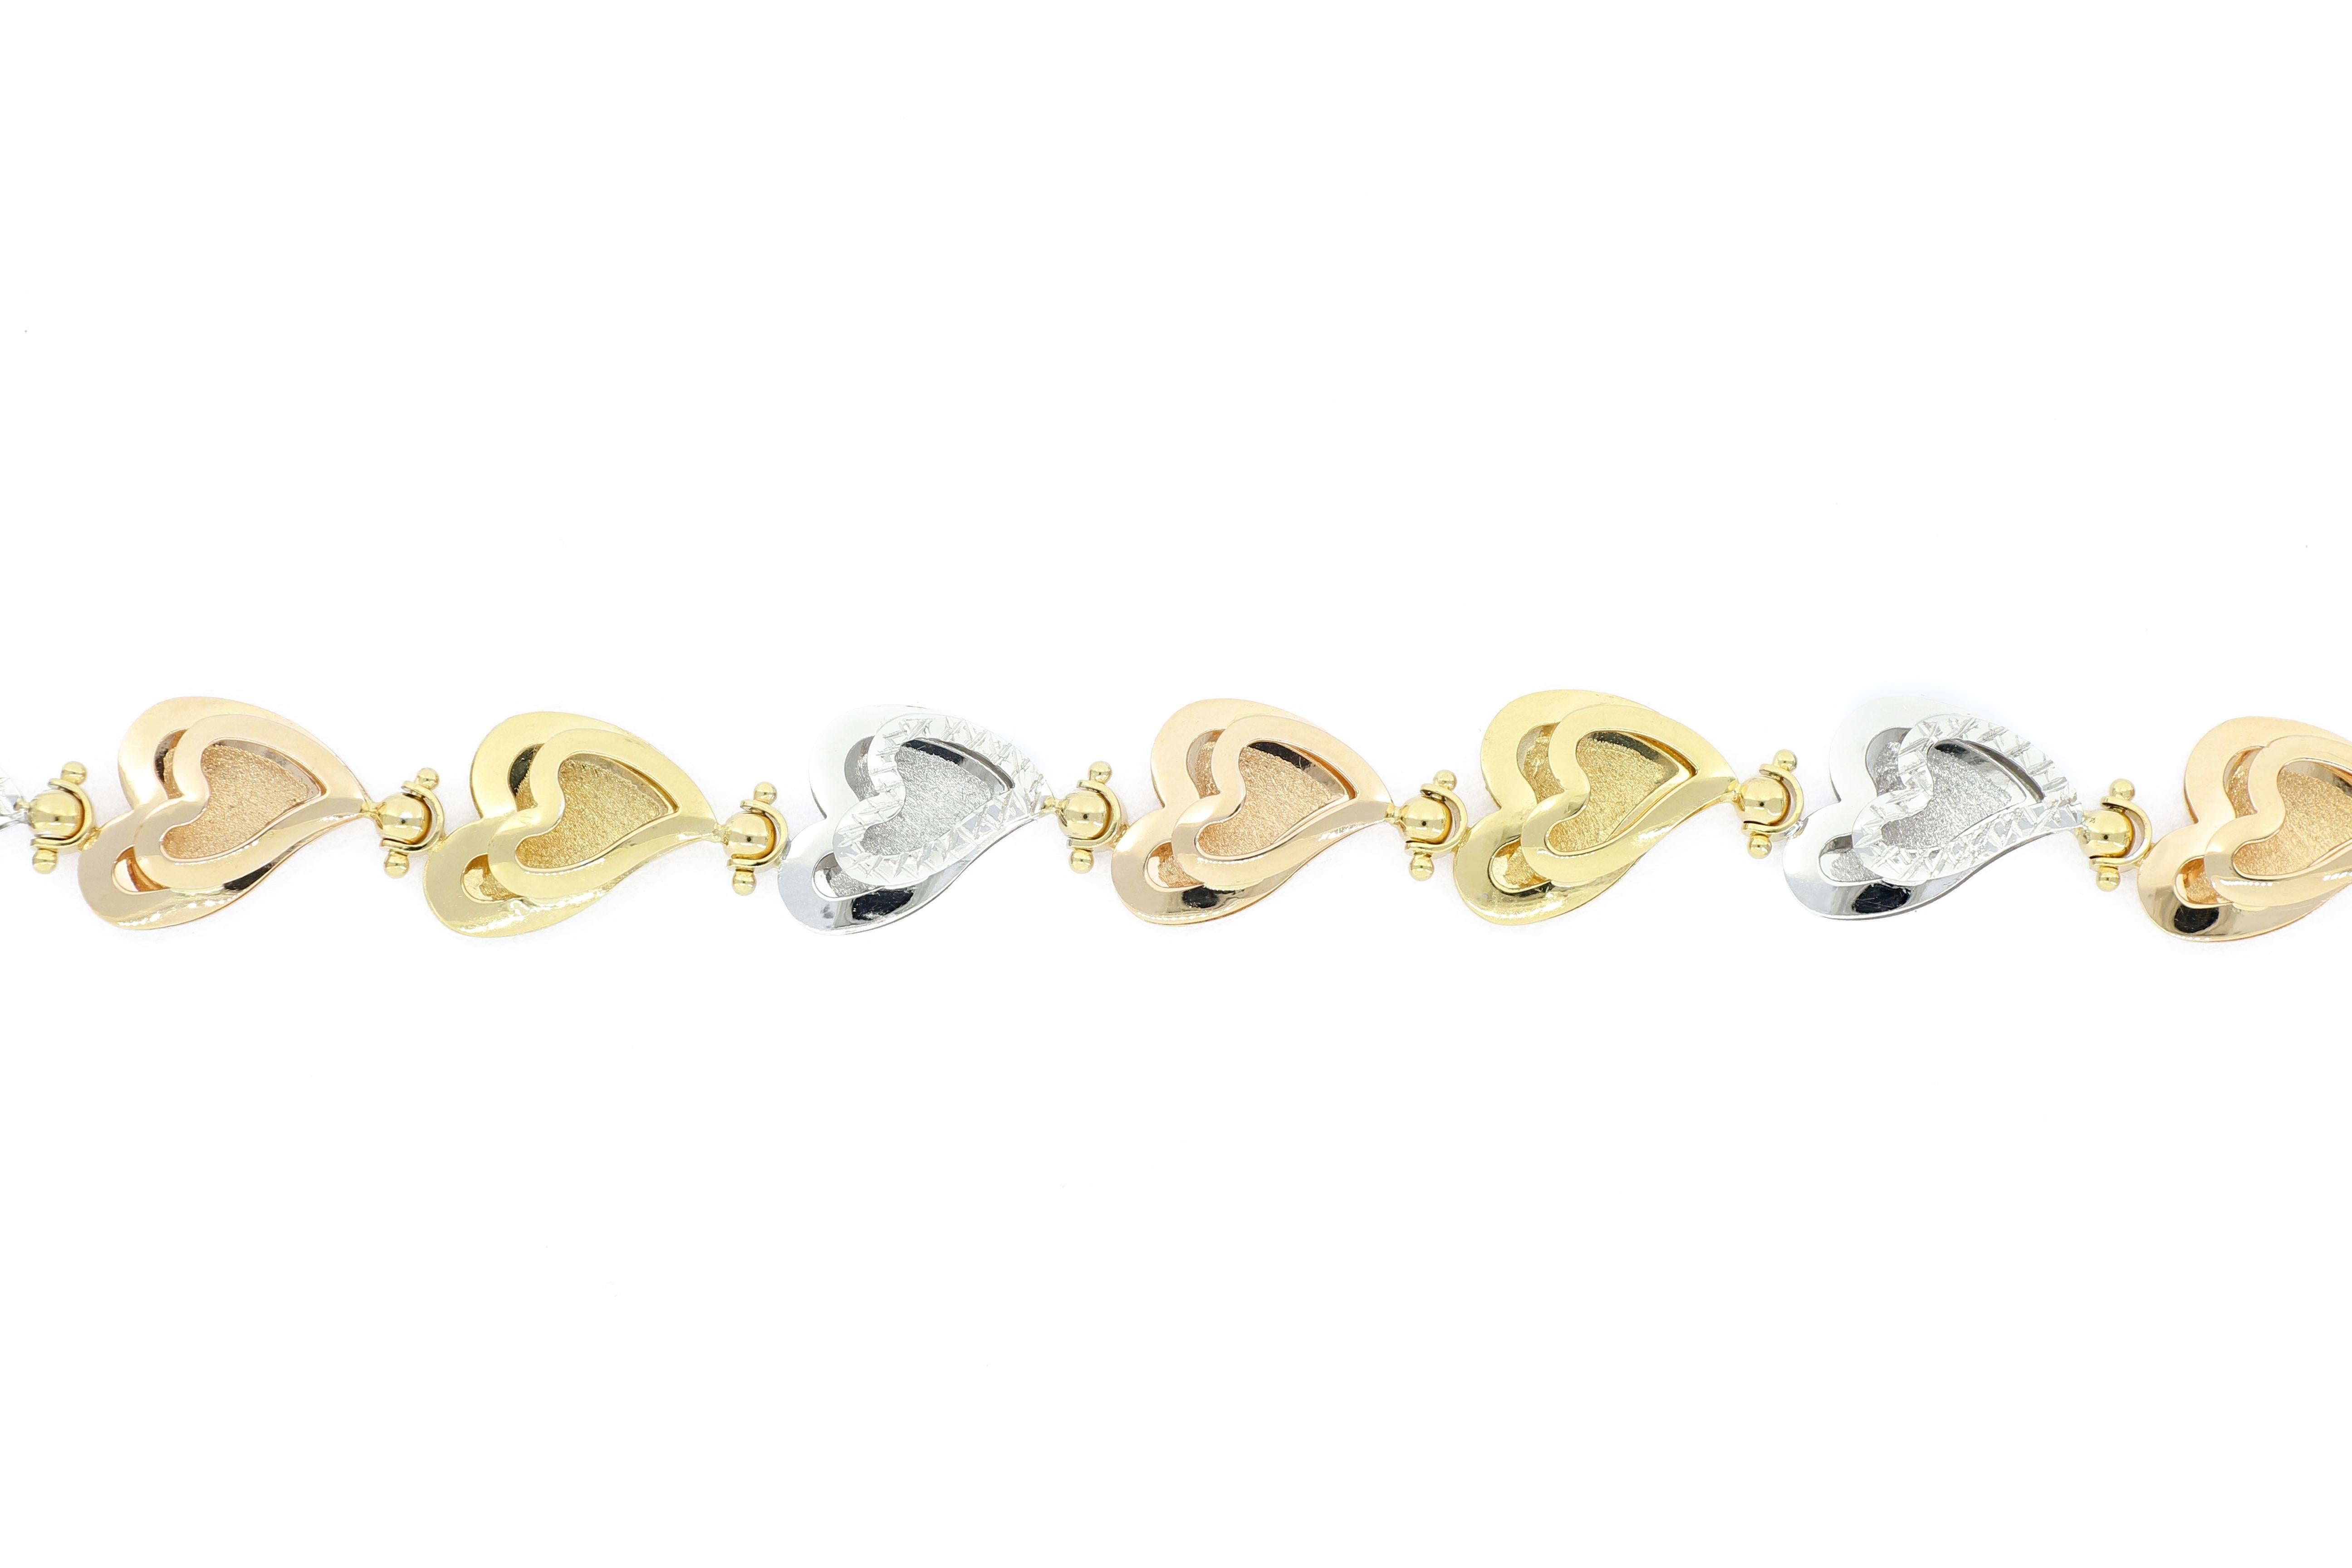 Ein stilvolles Armband aus 18 Karat Gold, entworfen und hergestellt in Italien. Dieses dreifarbige, schöne Armband mit herzförmigem Muster ist schlicht und elegant und passt zu verschiedenen Outfits.
Das Unternehmen wurde vor anderthalb